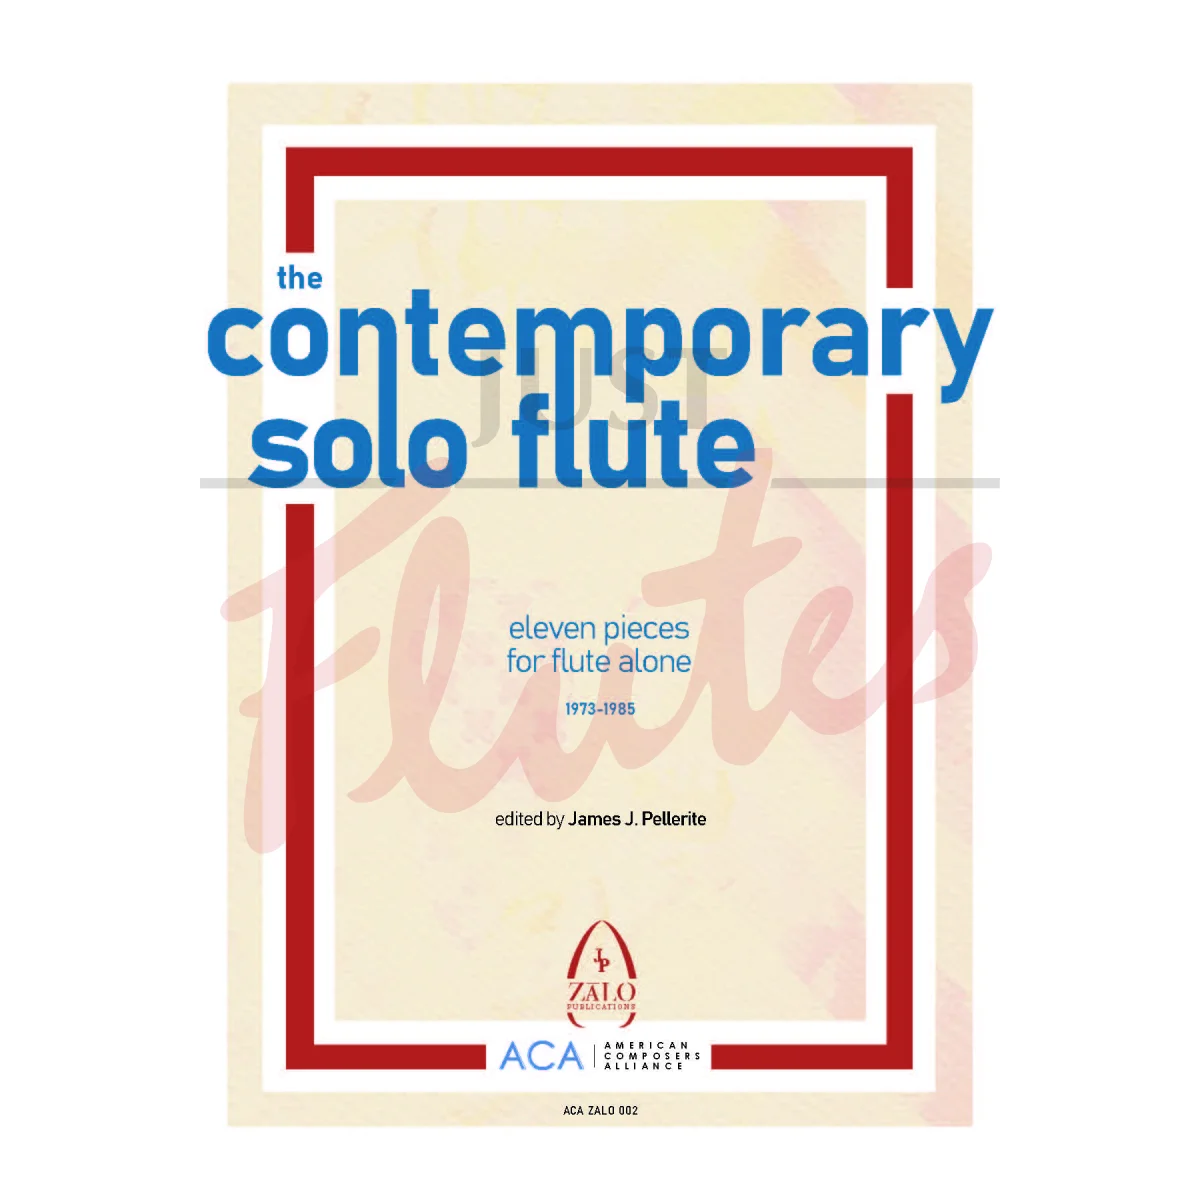 The Contemporary Solo Flute: Eleven Pieces for Flute Alone